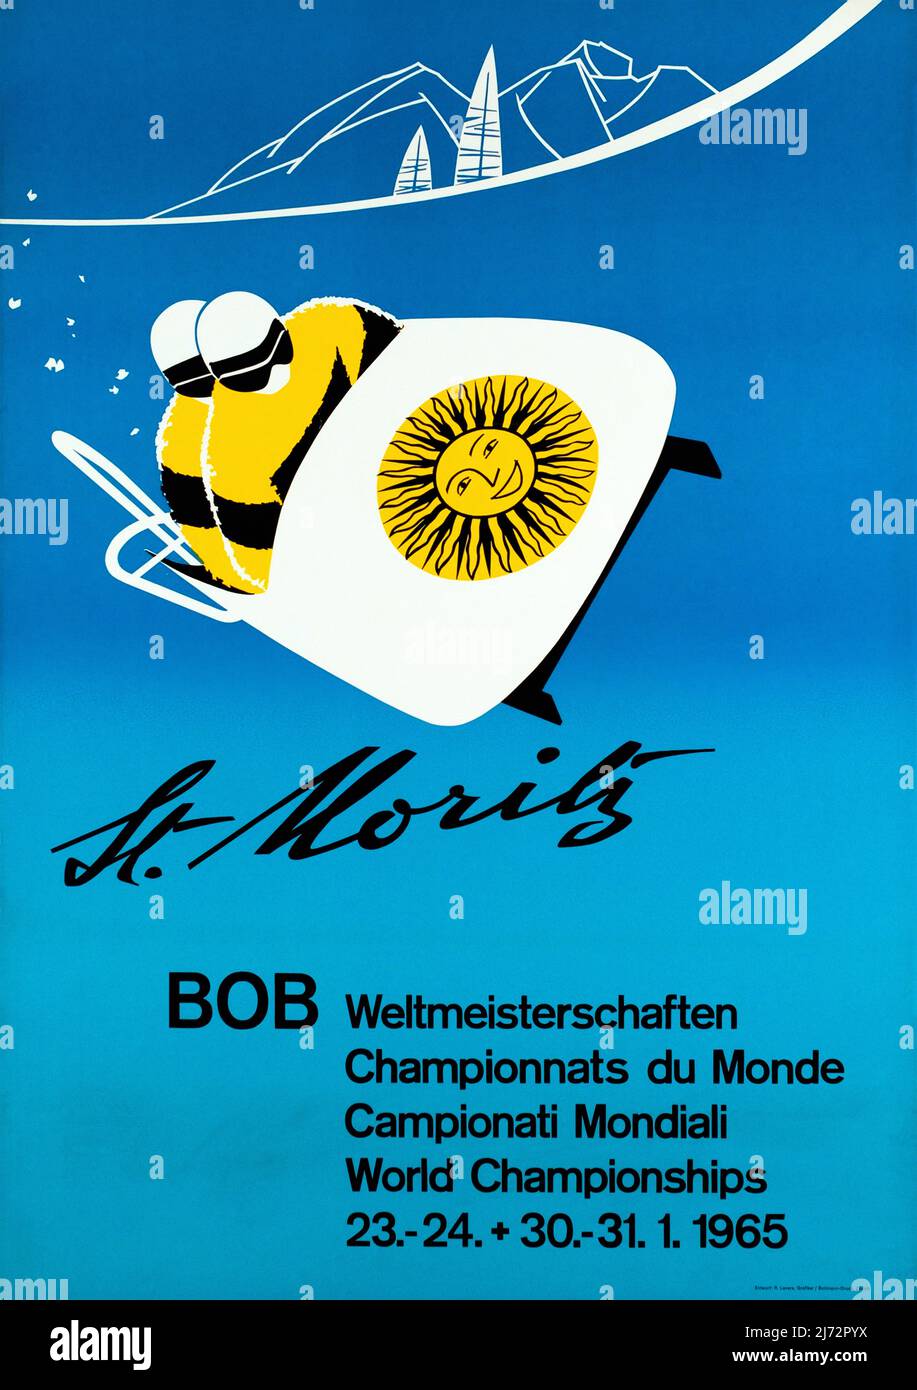 MORITZ, Championnats du monde de Bob Rudolph LEVE 1960s 1965 Foto Stock